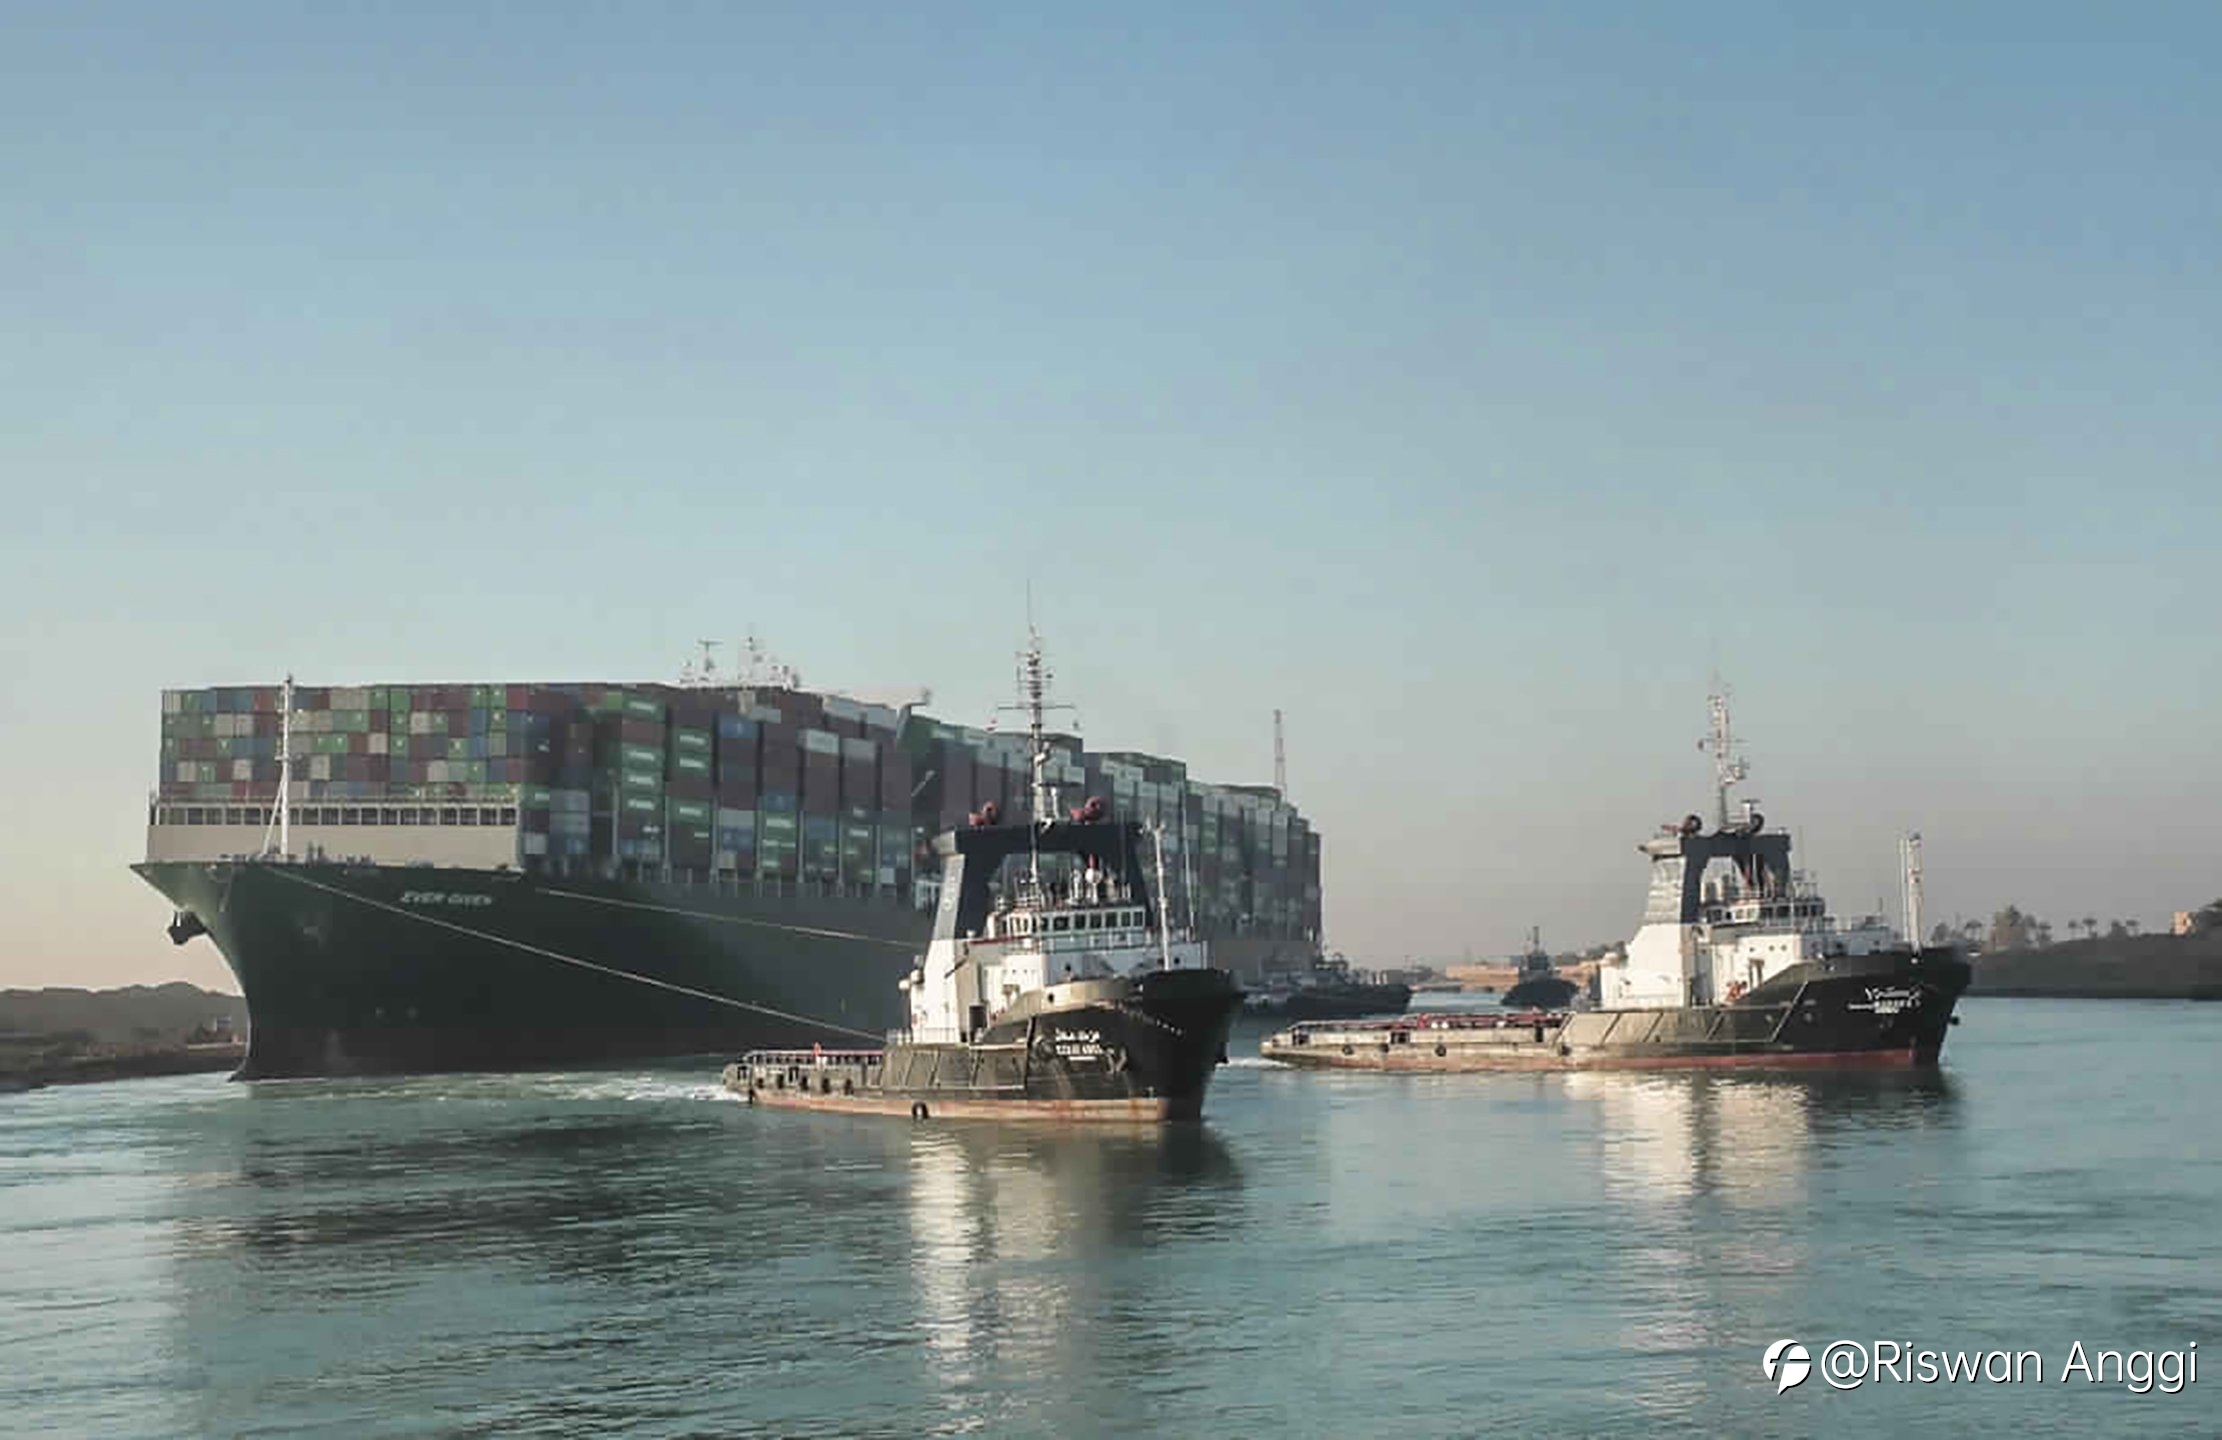 Lalu lintas di Terusan Suez dilanjutkan setelah kapal yang terdampar diapungkan kembali